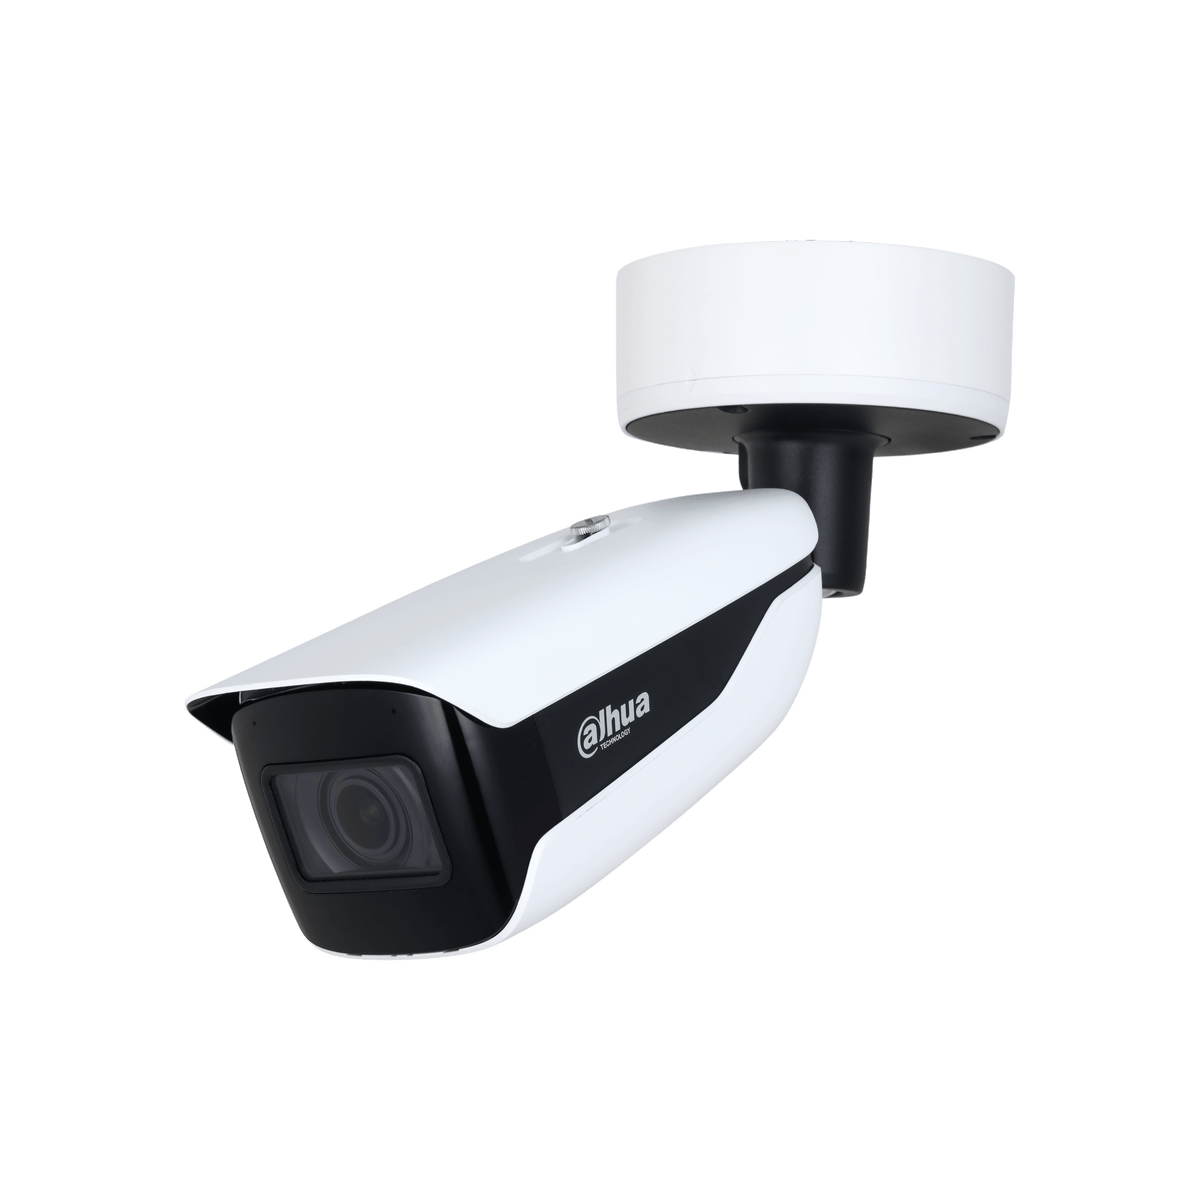 DAHUA IPC-HFW5442H-Z4HE 4MP IR Vari-focal Bullet WizMind Network Camera